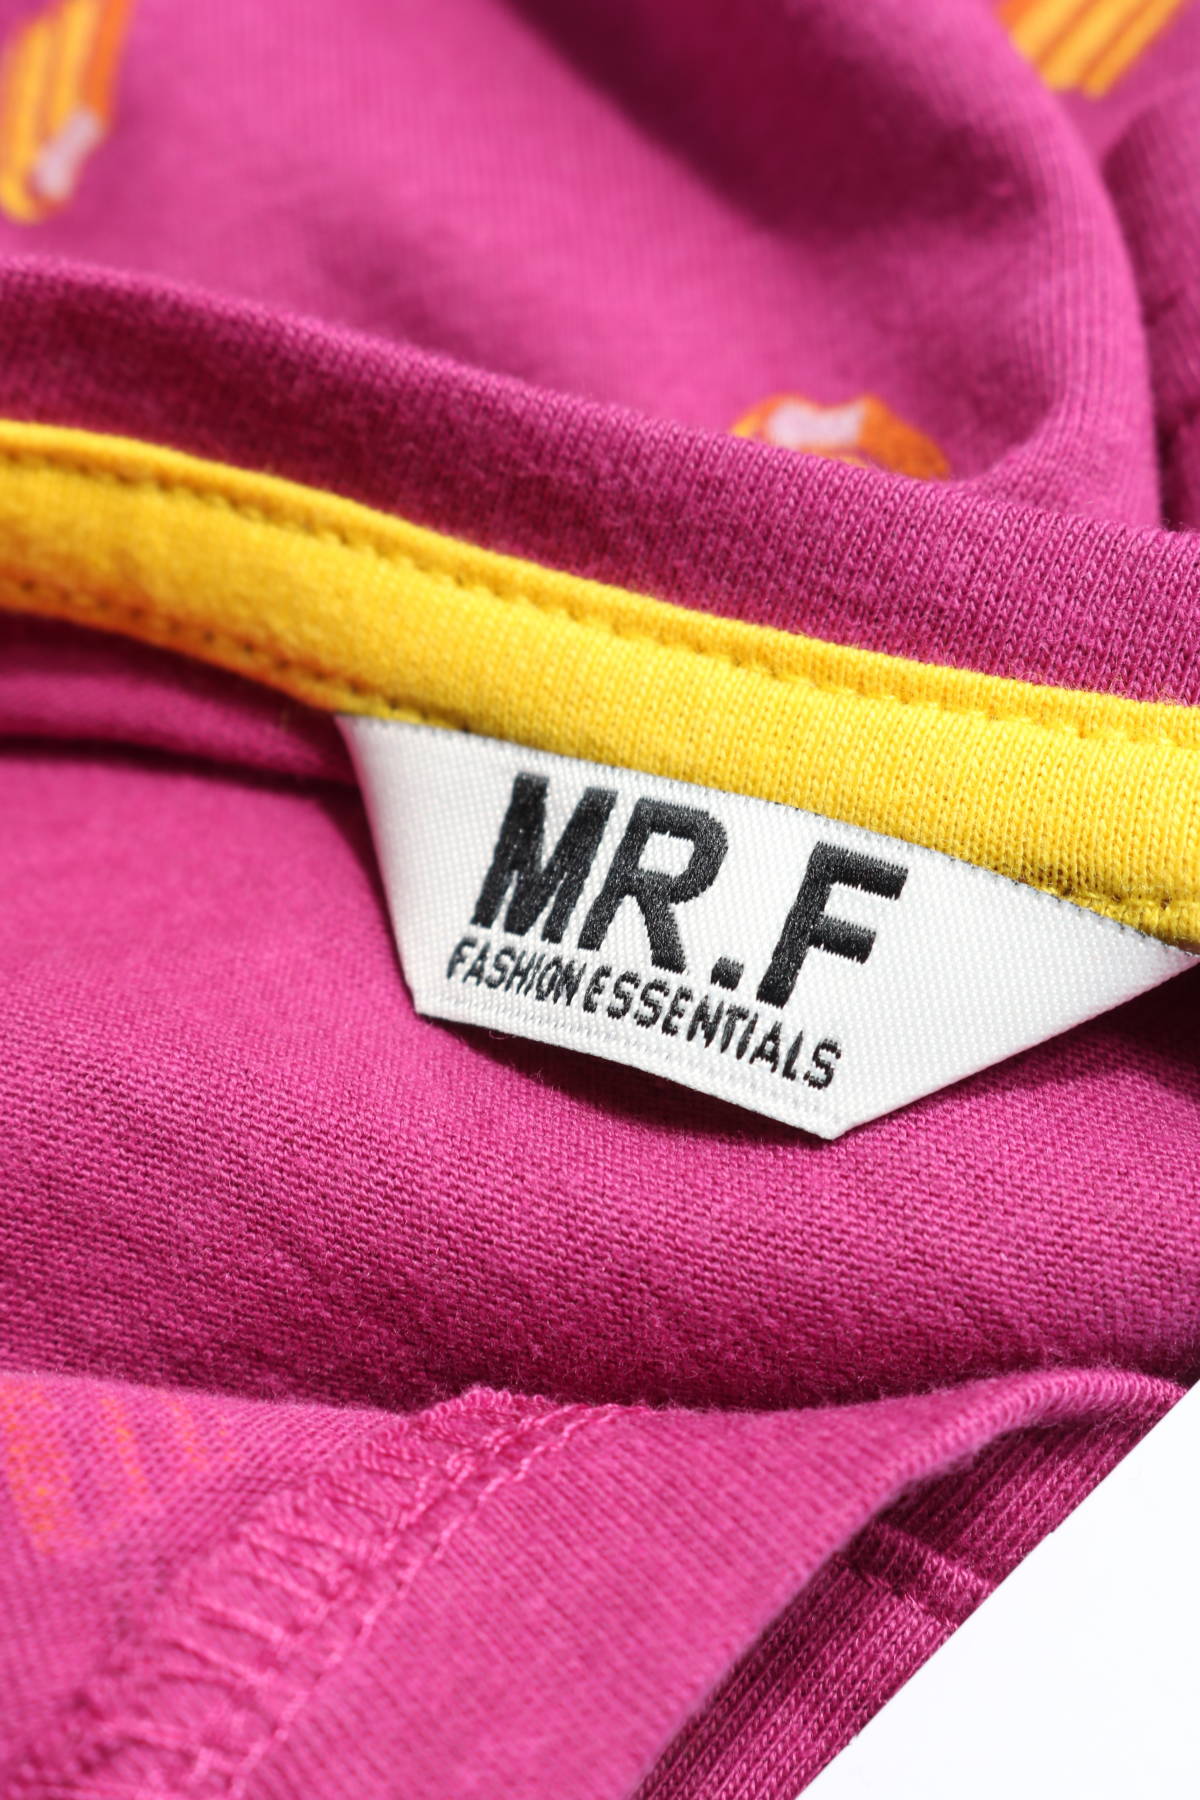 Тениска MR.F3